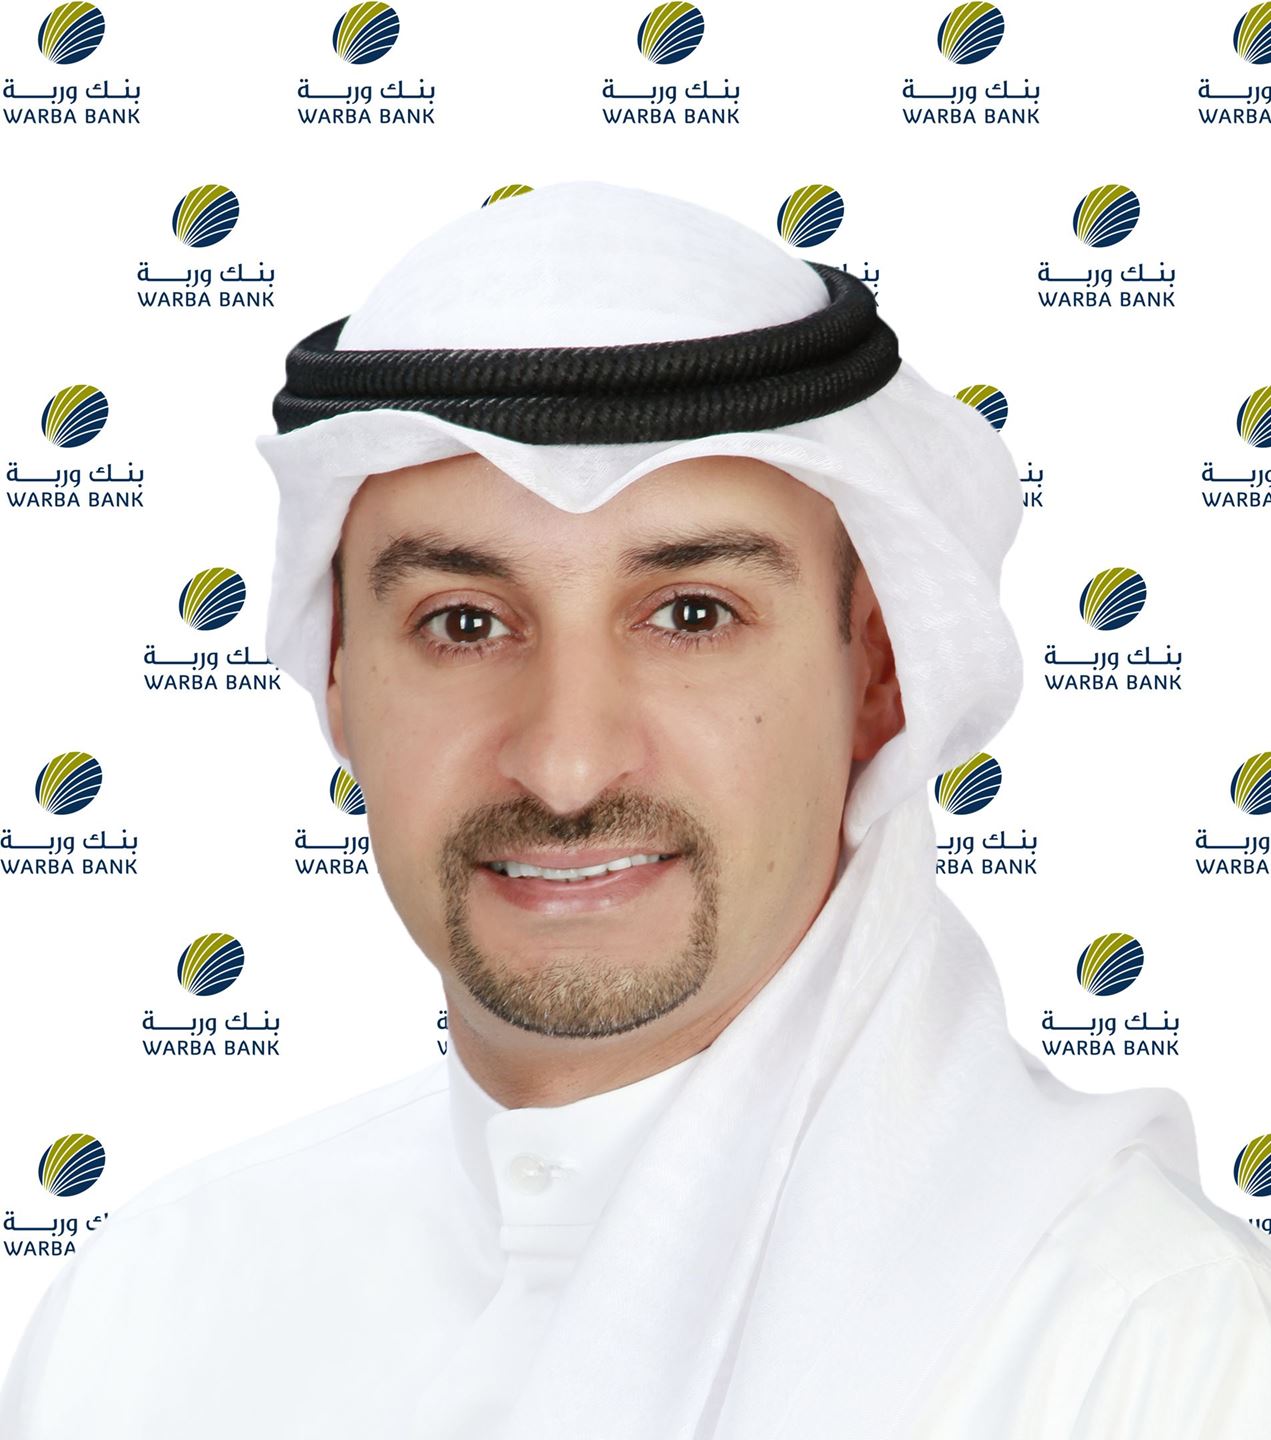 أيمن سالم المطيري مدير أول الإتصال المؤسسي - المجموعة التخطيط الإستراتيجي في بنك وربة